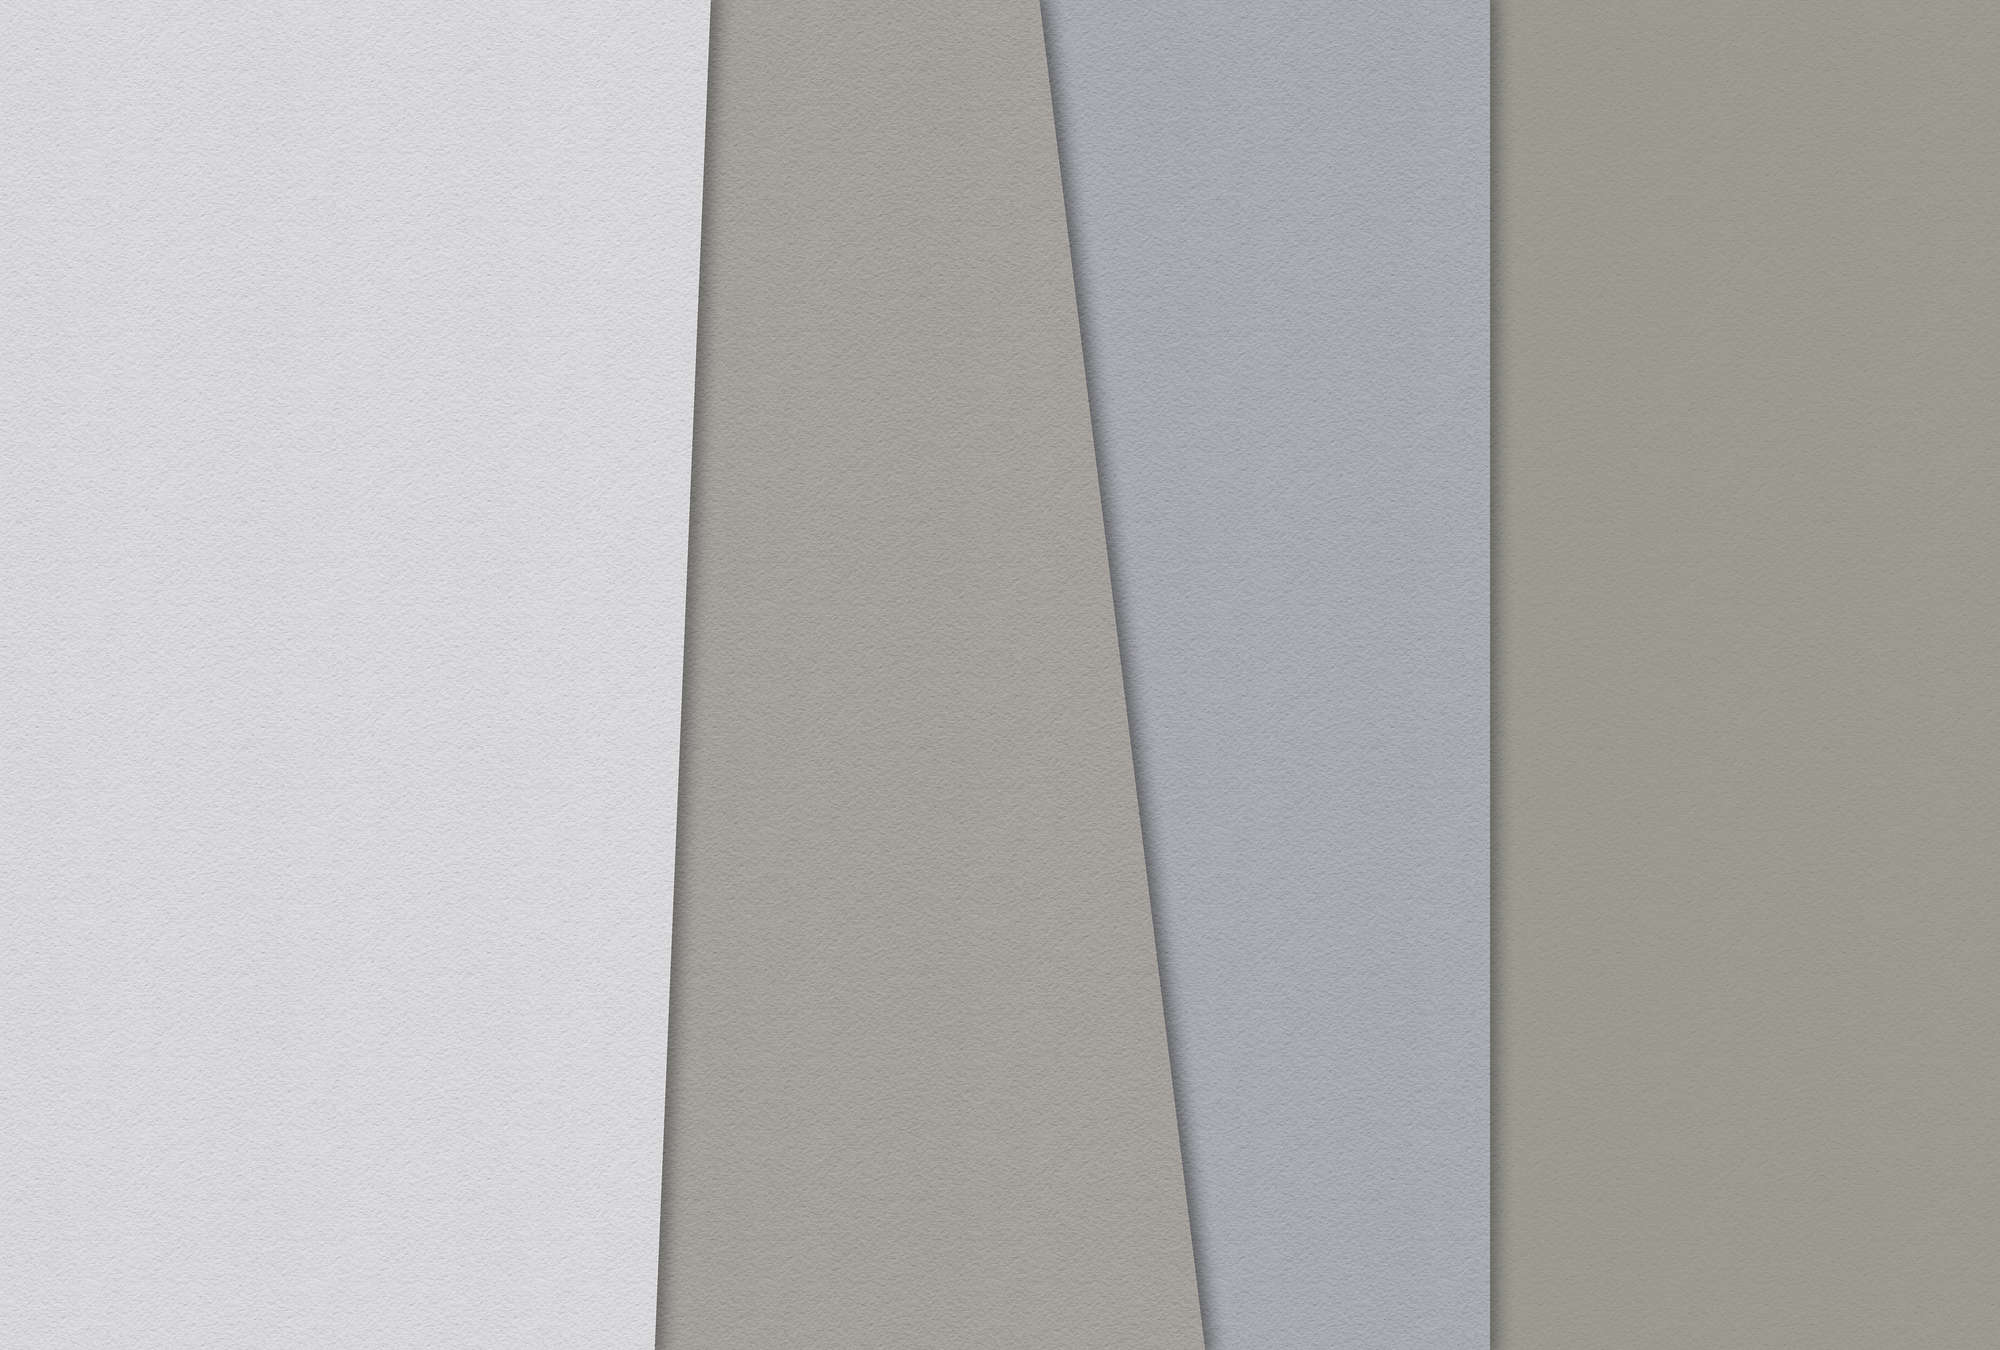             Carta stratificata 4 - Fotomurali minimalista colorato in carta fatta a mano - Blu, Crema | Pile liscio premium
        